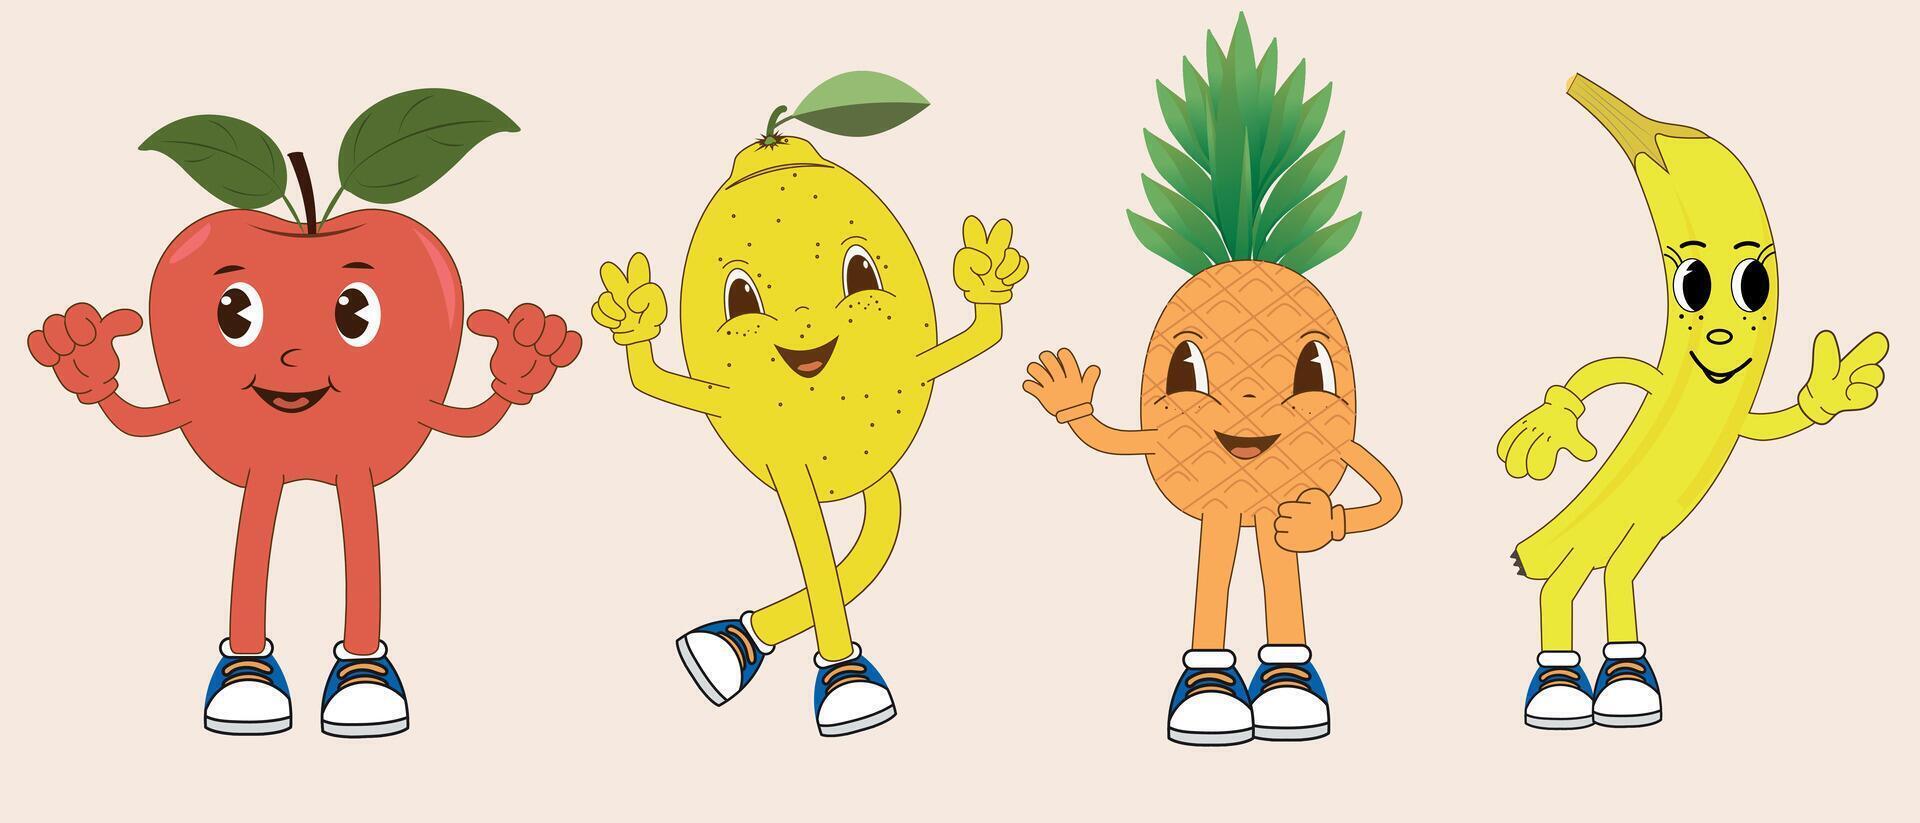 conjunto do engraçado retro desenho animado fruta personagens dentro diferente poses e emoções. maçã, banana, limão, abacaxi. sorridente fruta mascote vetor ilustração.